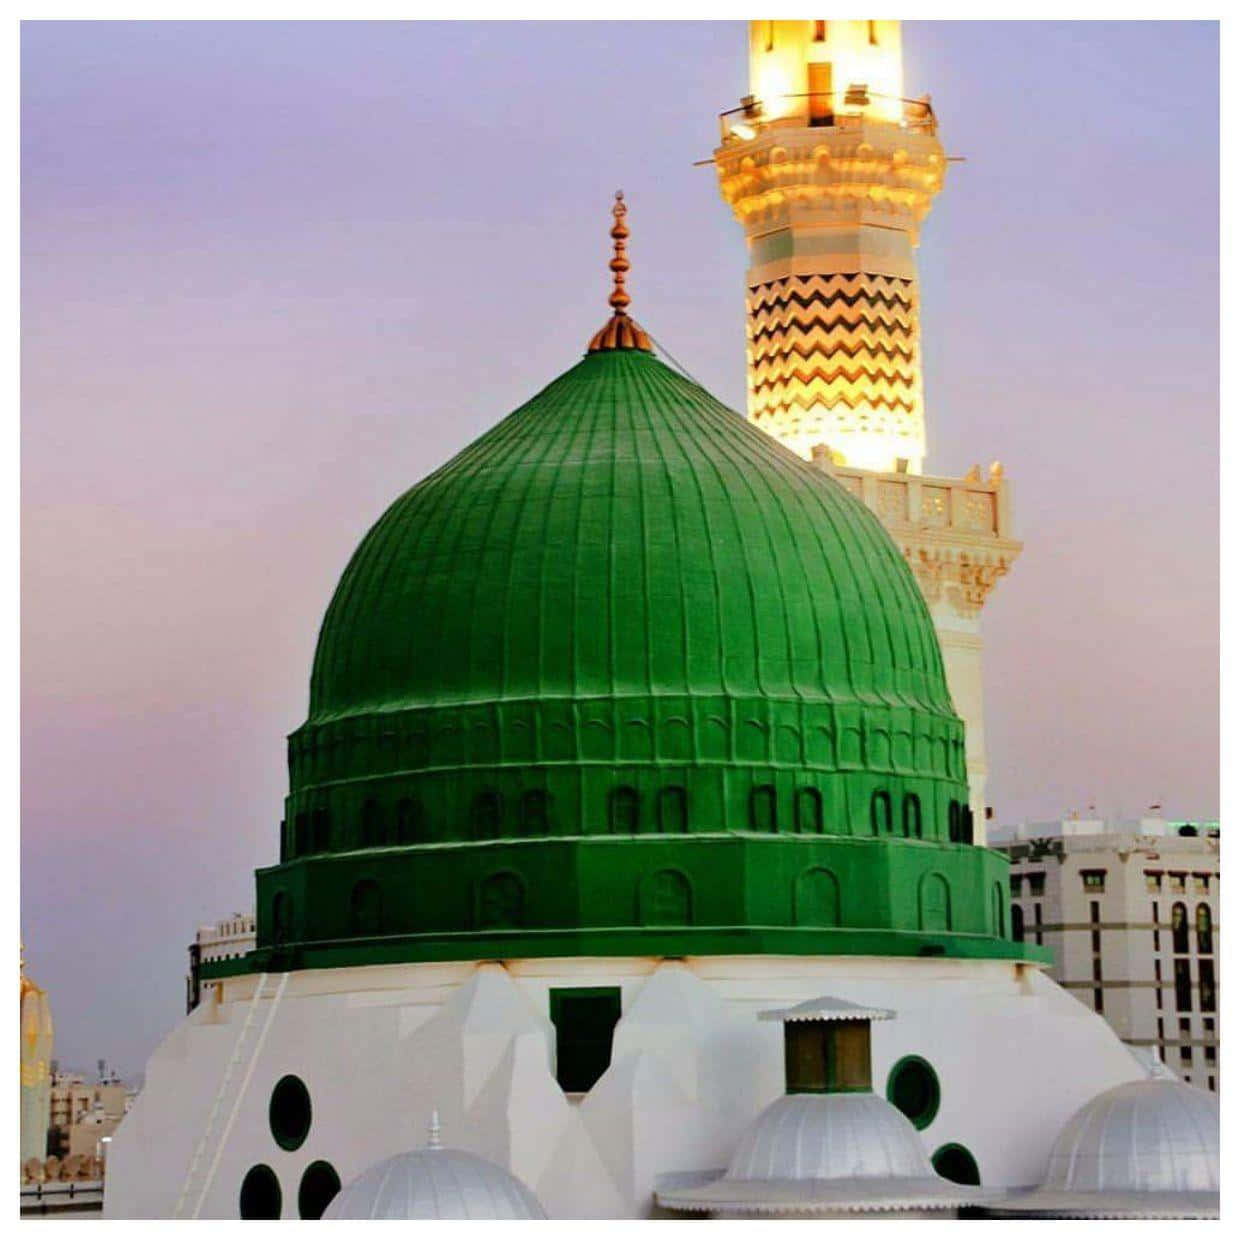 The holy city of Medina, Saudi Arabia